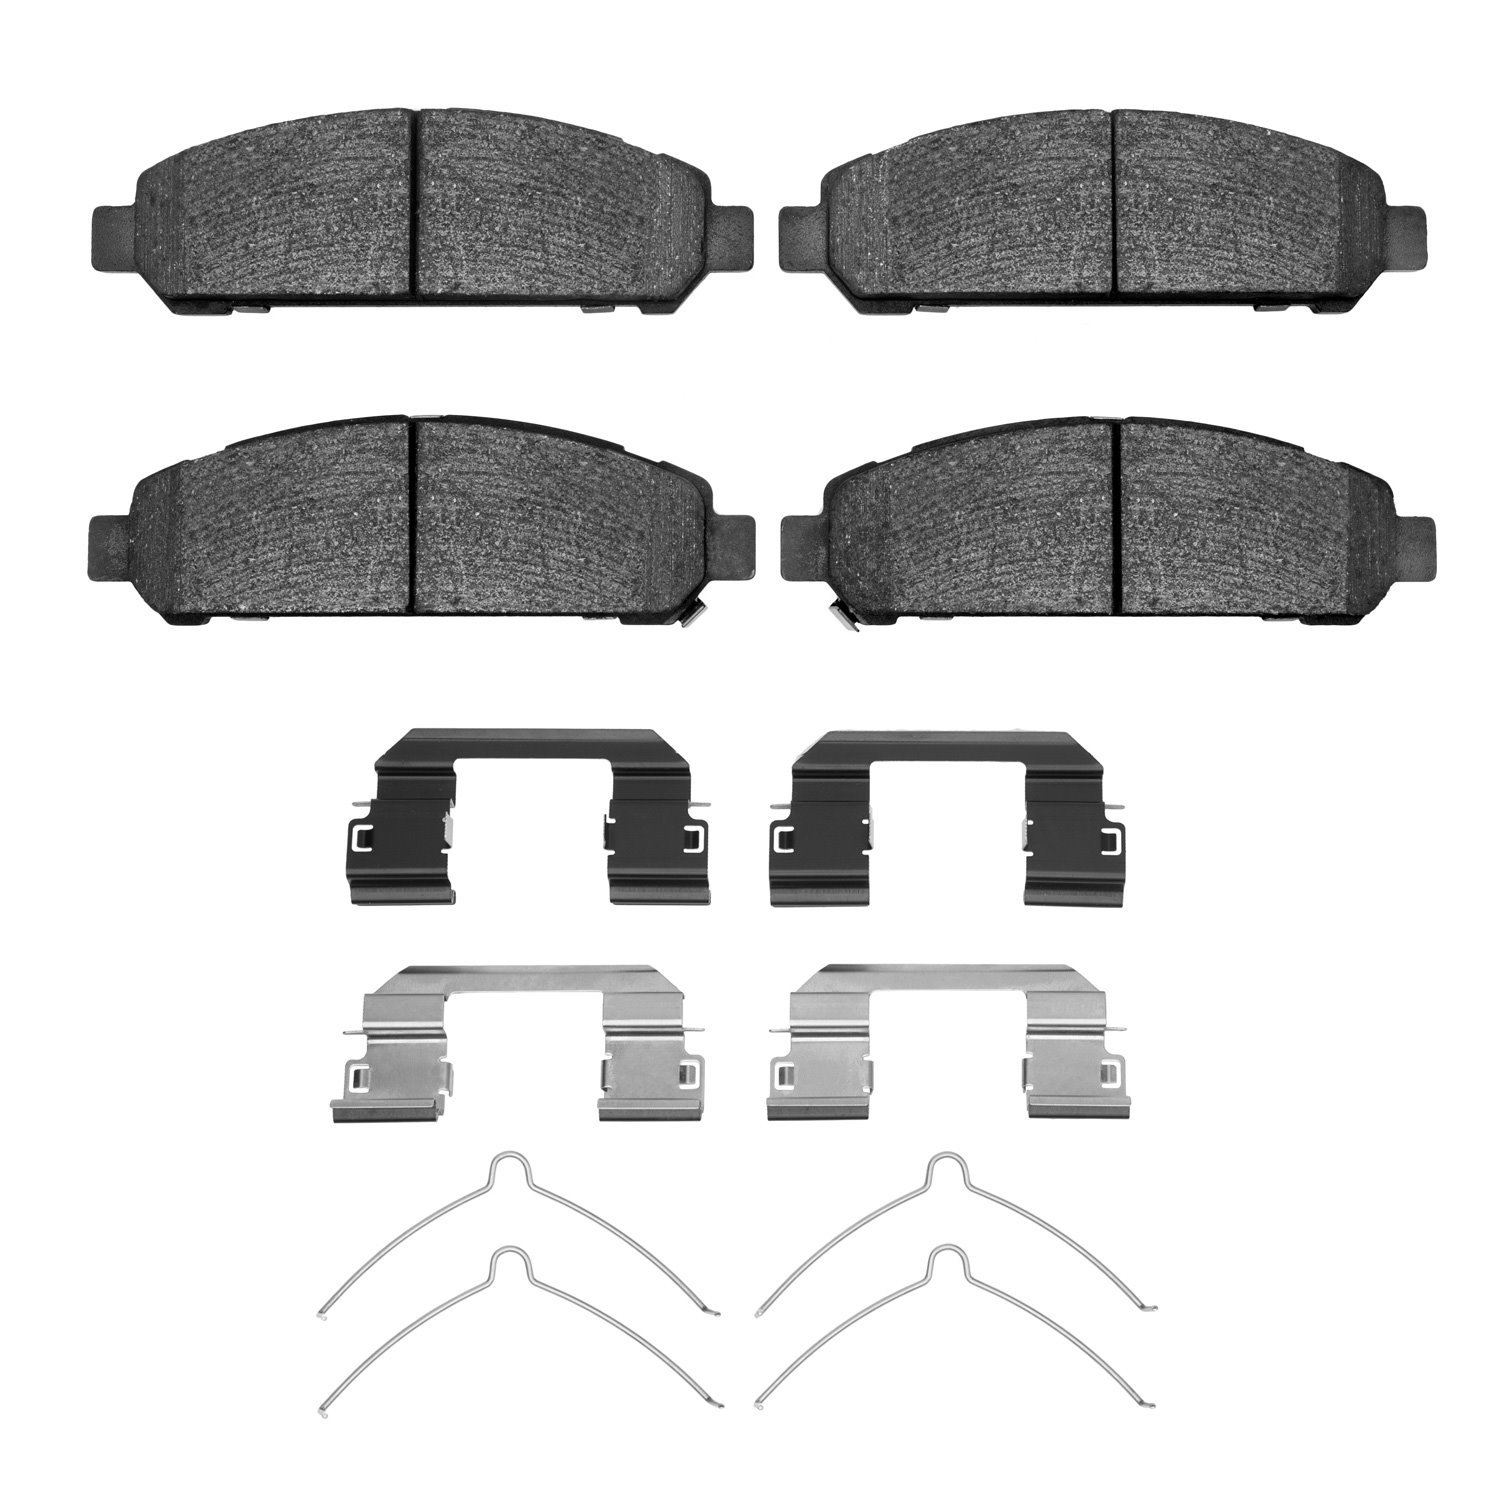 1310-1401-01 3000-Series Ceramic Brake Pads & Hardware Kit, 2009-2015 Lexus/Toyota/Scion, Position: Front